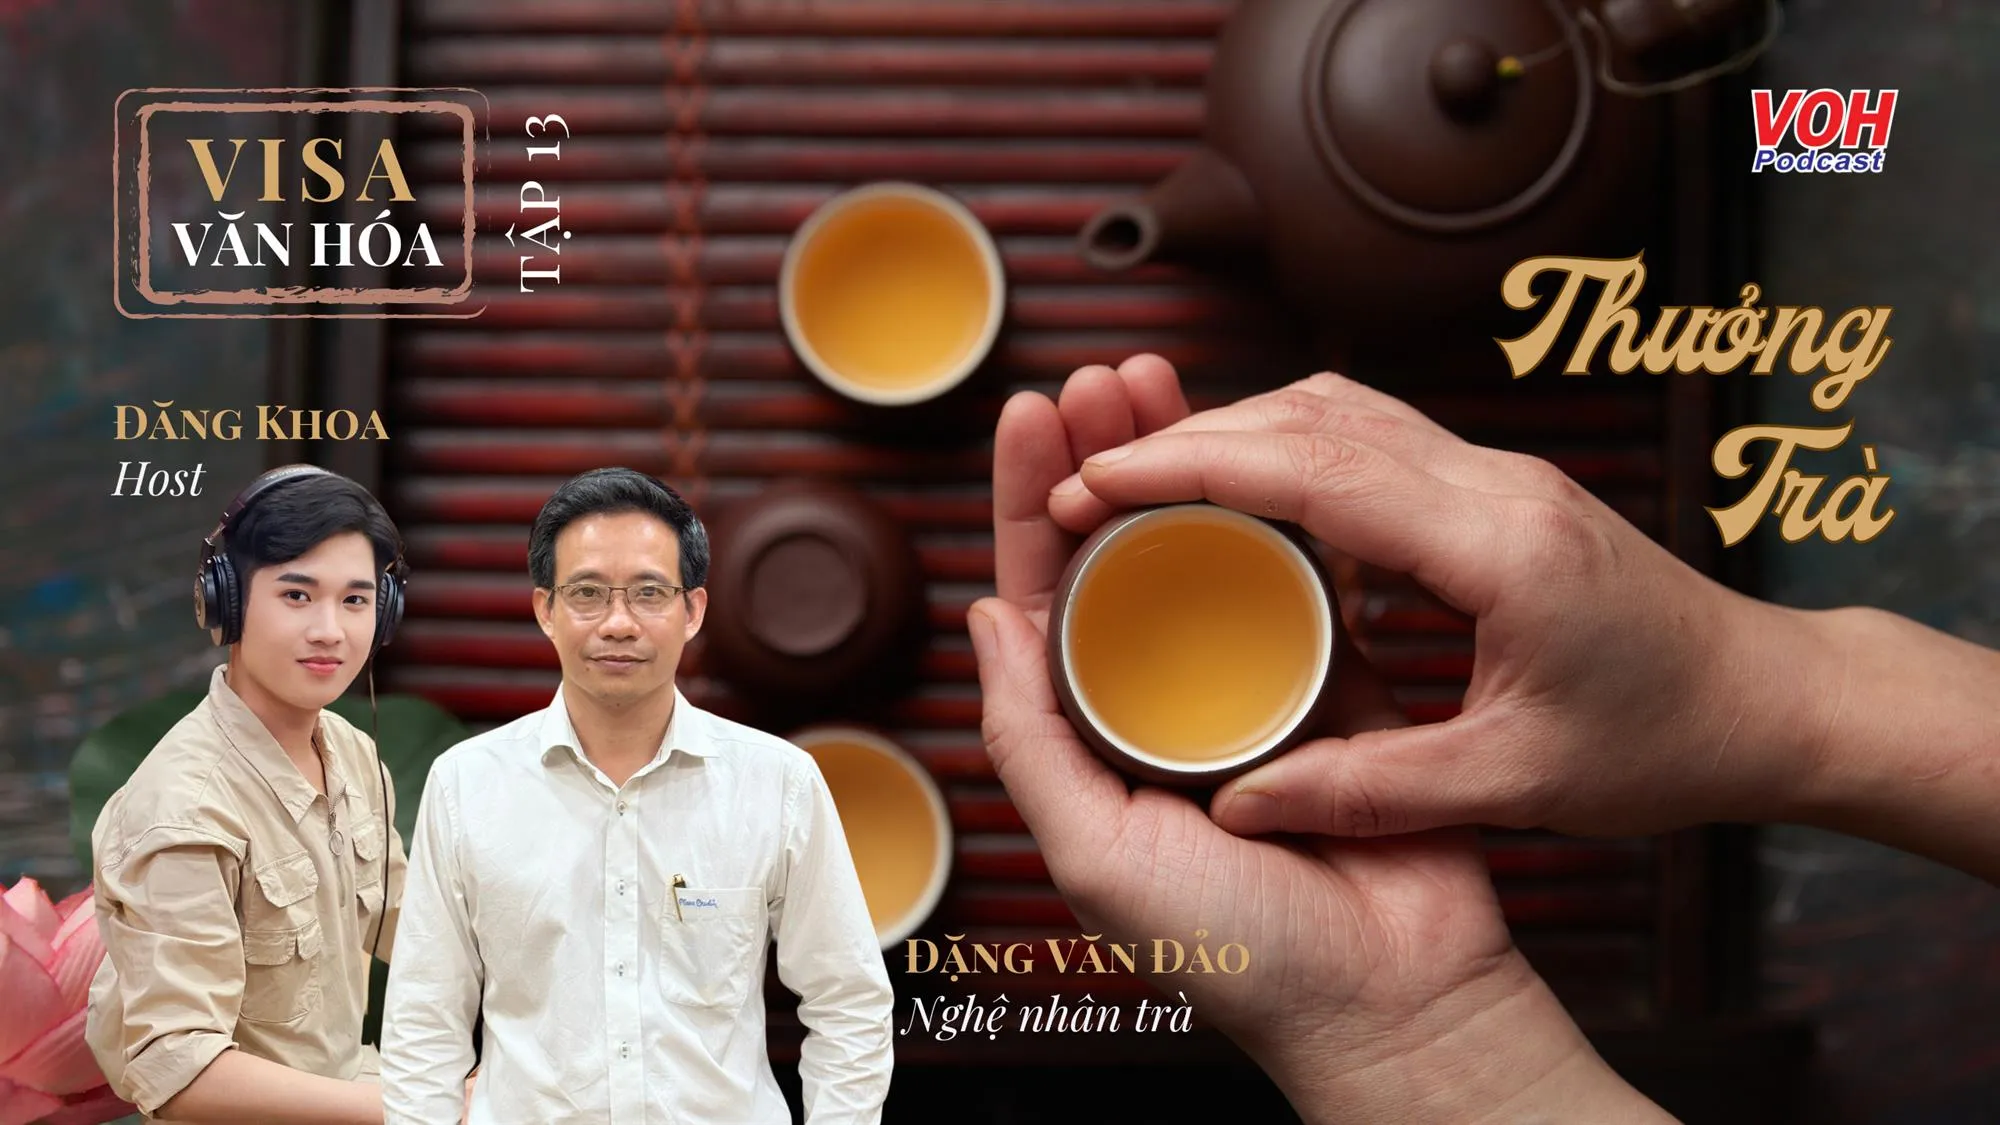 #013. Nghệ thuật thưởng trà trong văn hóa Việt 